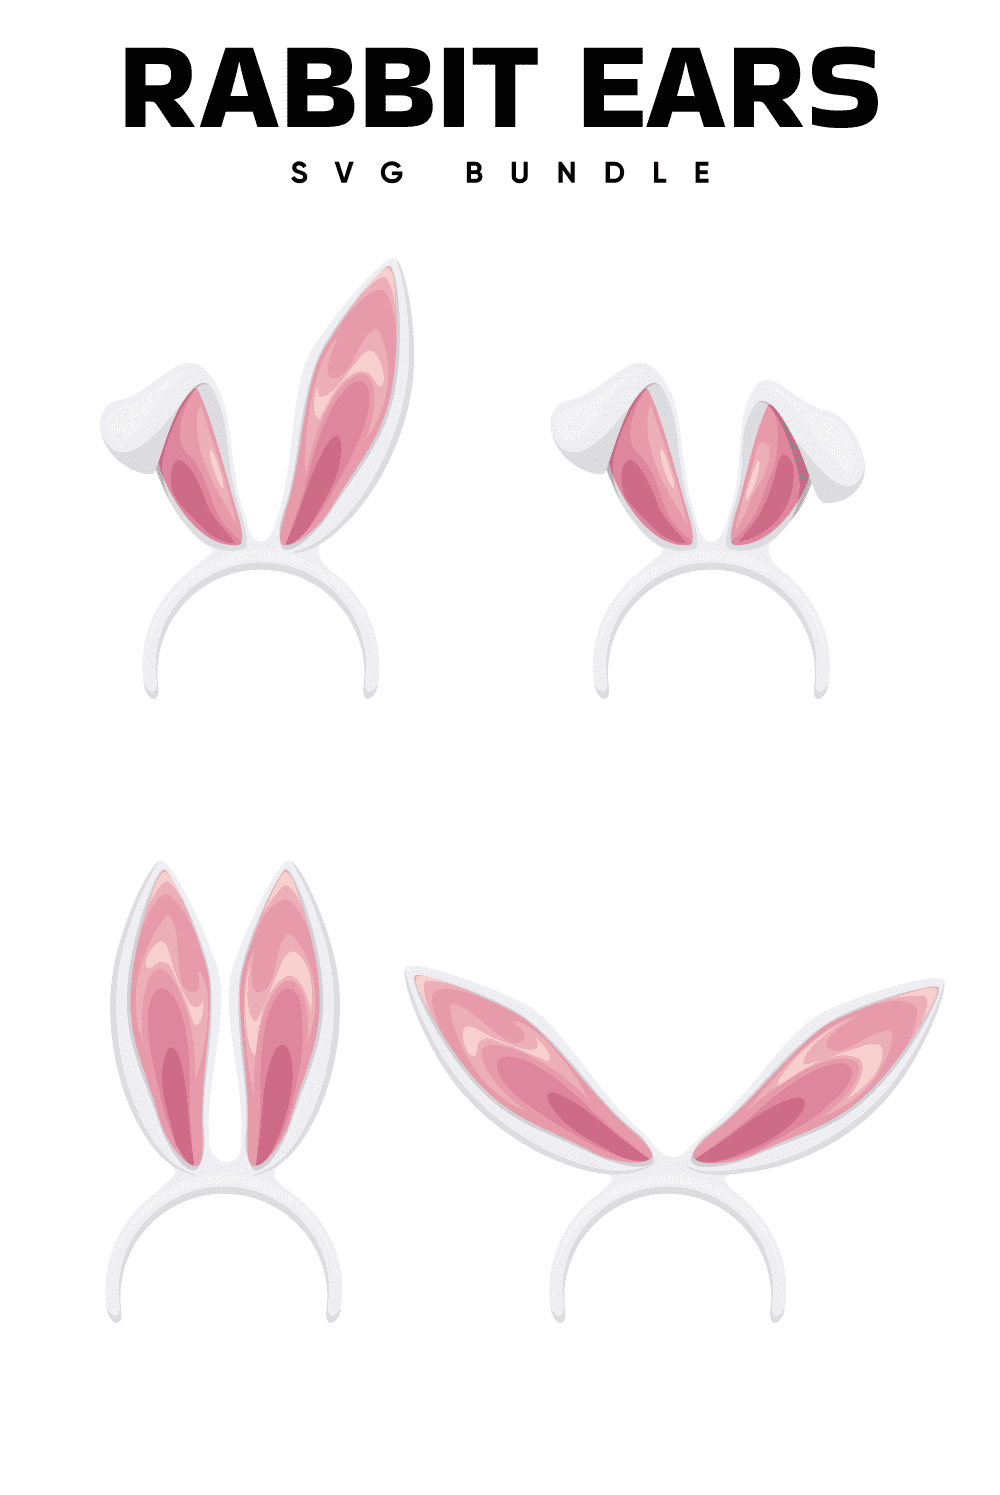 Rabbit Ears Svg - Pinterest.